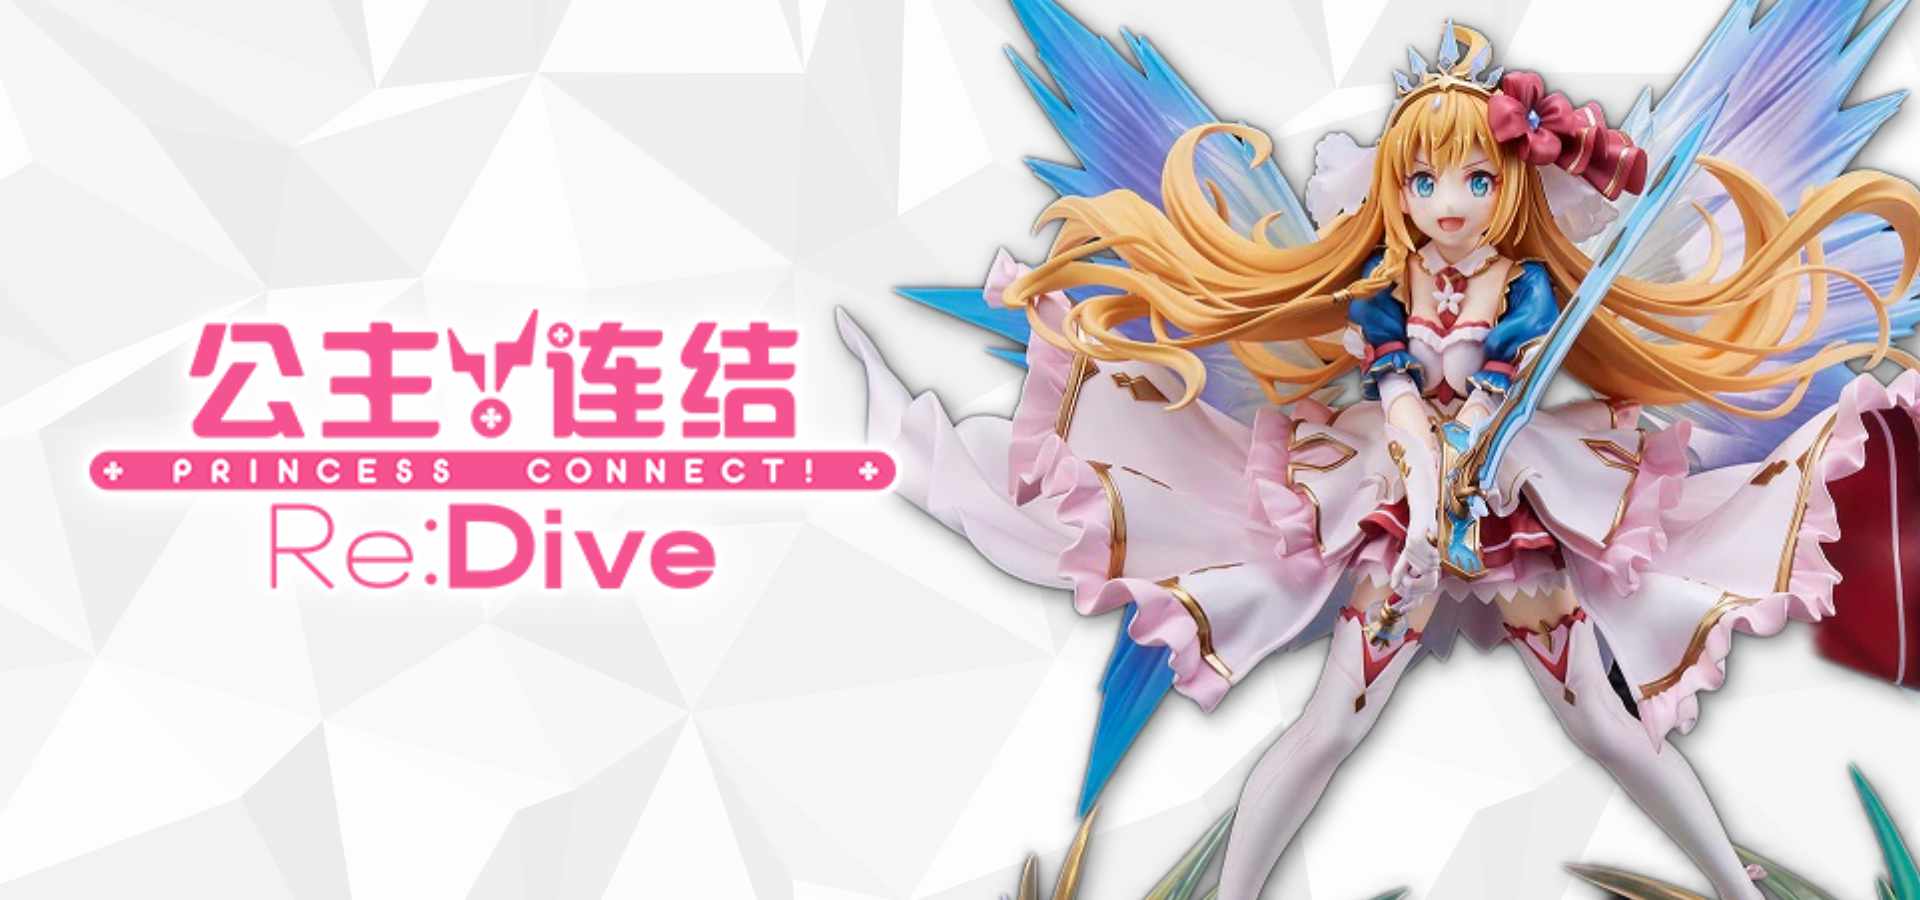 Princess Connect Re:Dive